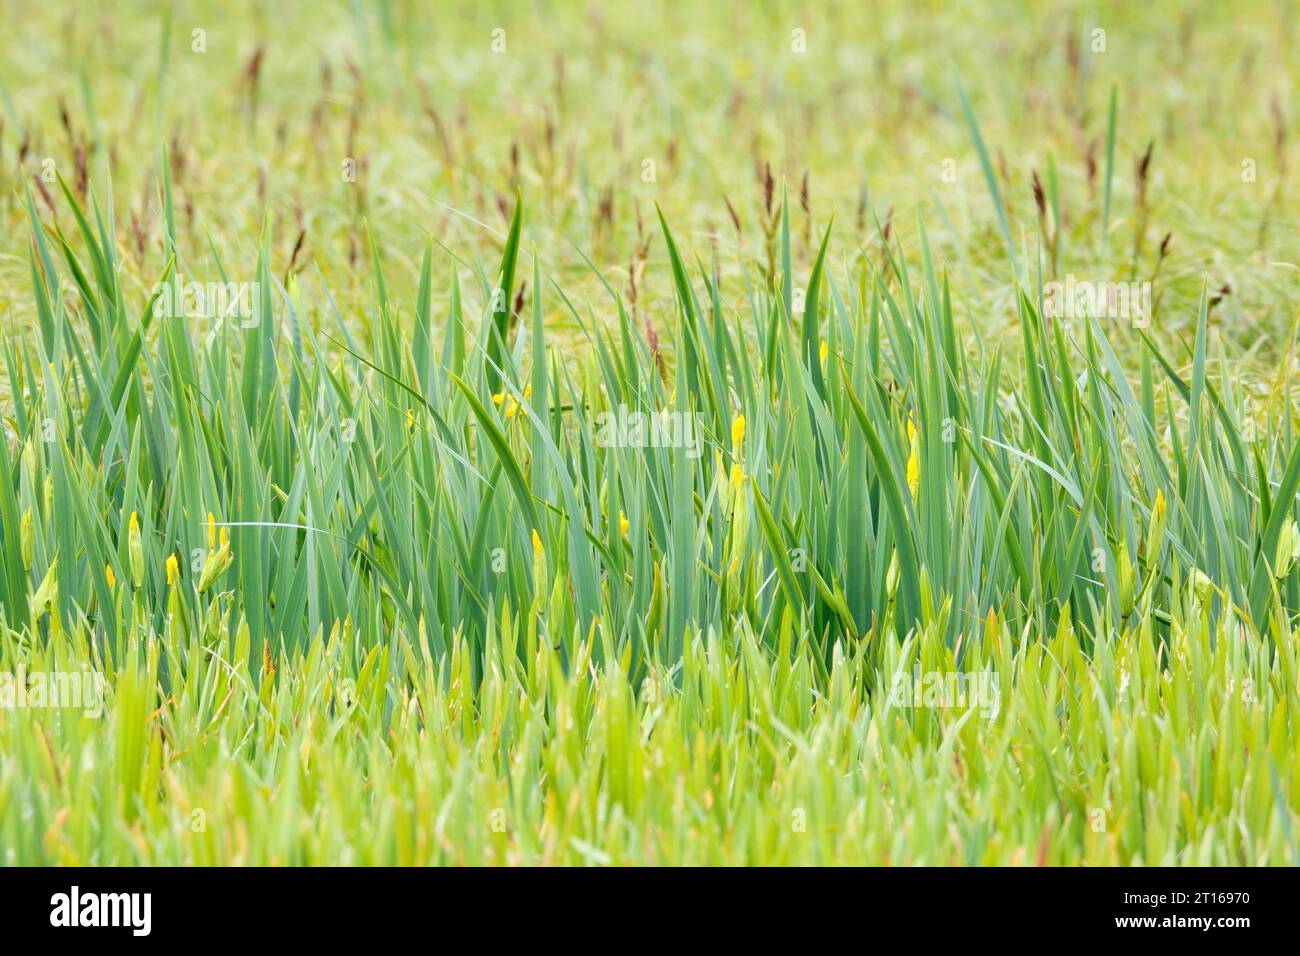 Fleurs de l'iris, habitat de reproduction pour espèces d'oiseaux rares, Parc naturel de paysage de la rivière Peene, Mecklembourg-Poméranie occidentale, Allemagne Banque D'Images